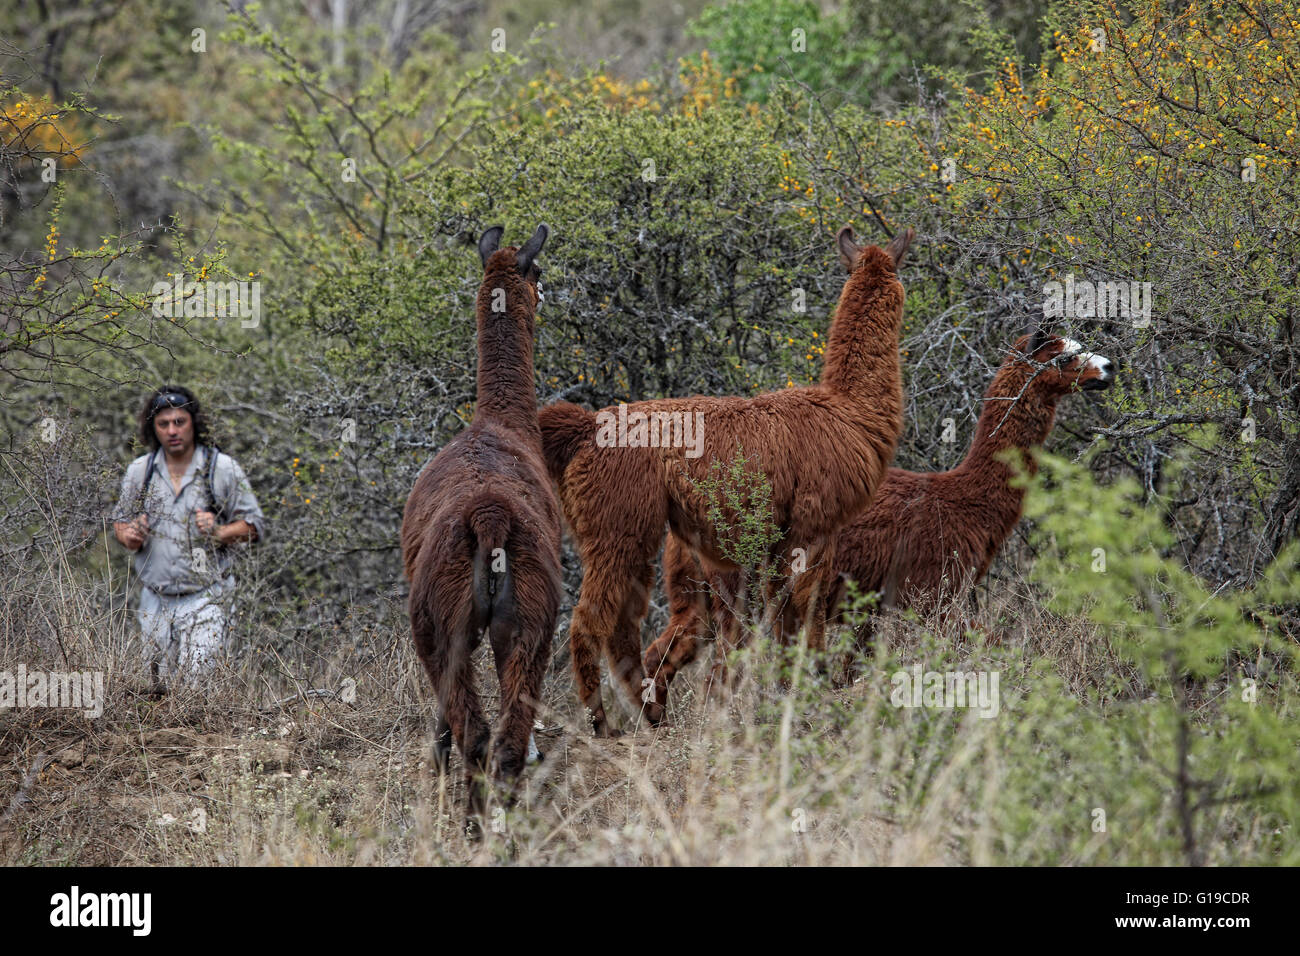 Tre guanaco (Lama guanicoe) nel Parque Nacional Los Cardones, Argentina settentrionale, vicino alla cittadina di Cachi, provincia di Salta. Sullo sfondo si vede un enorme cactus chiamato cardones (pachycereus pringleii). Foto Stock